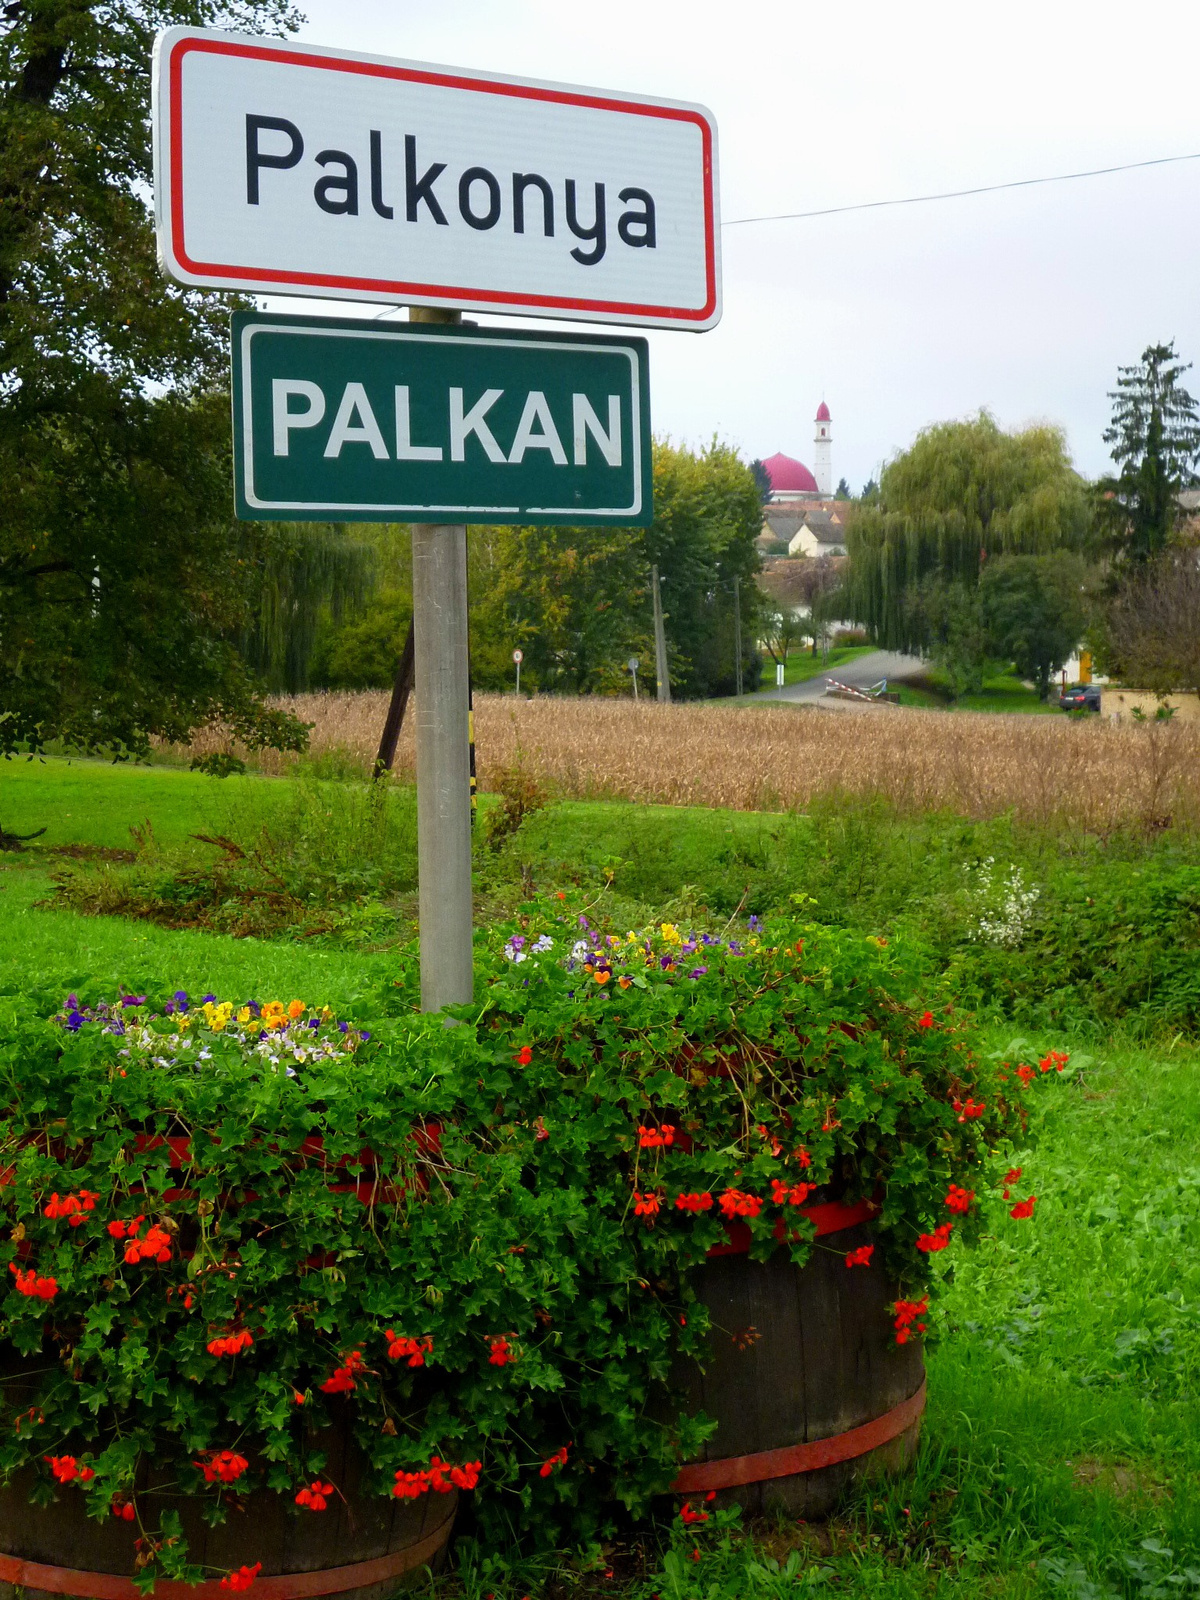 Palkonya